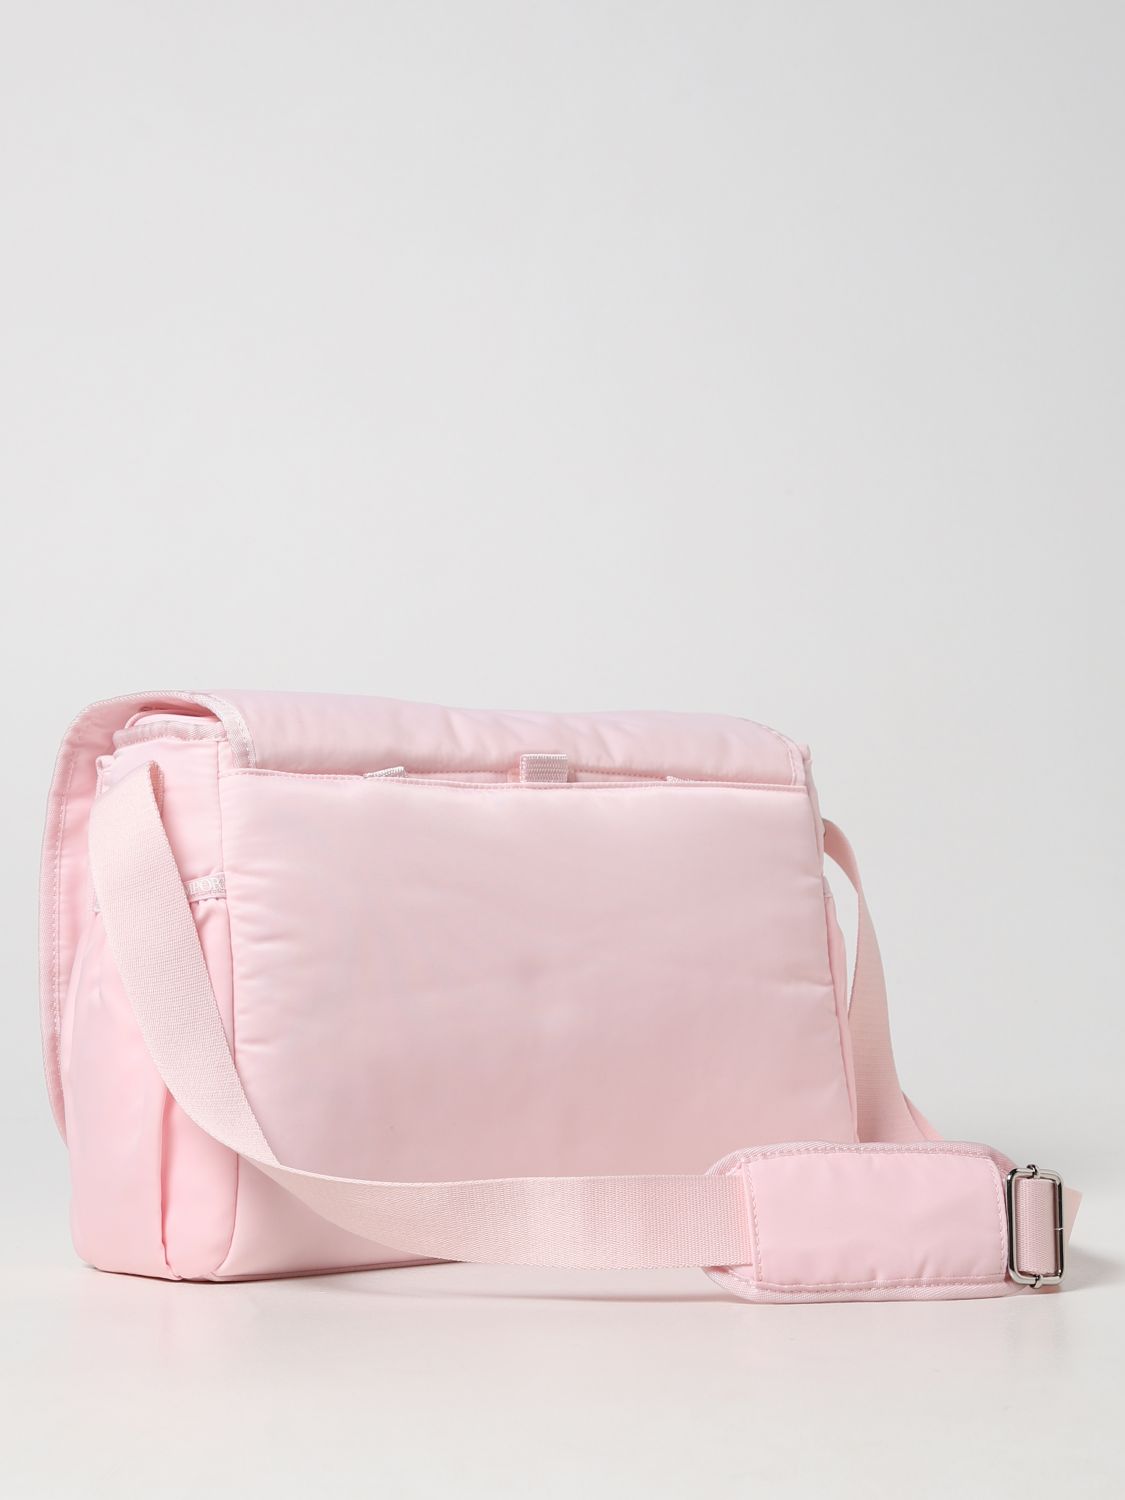 Vari per corredo Emporio Armani: Diaper bag Emporio Armani in nylon rosa 2